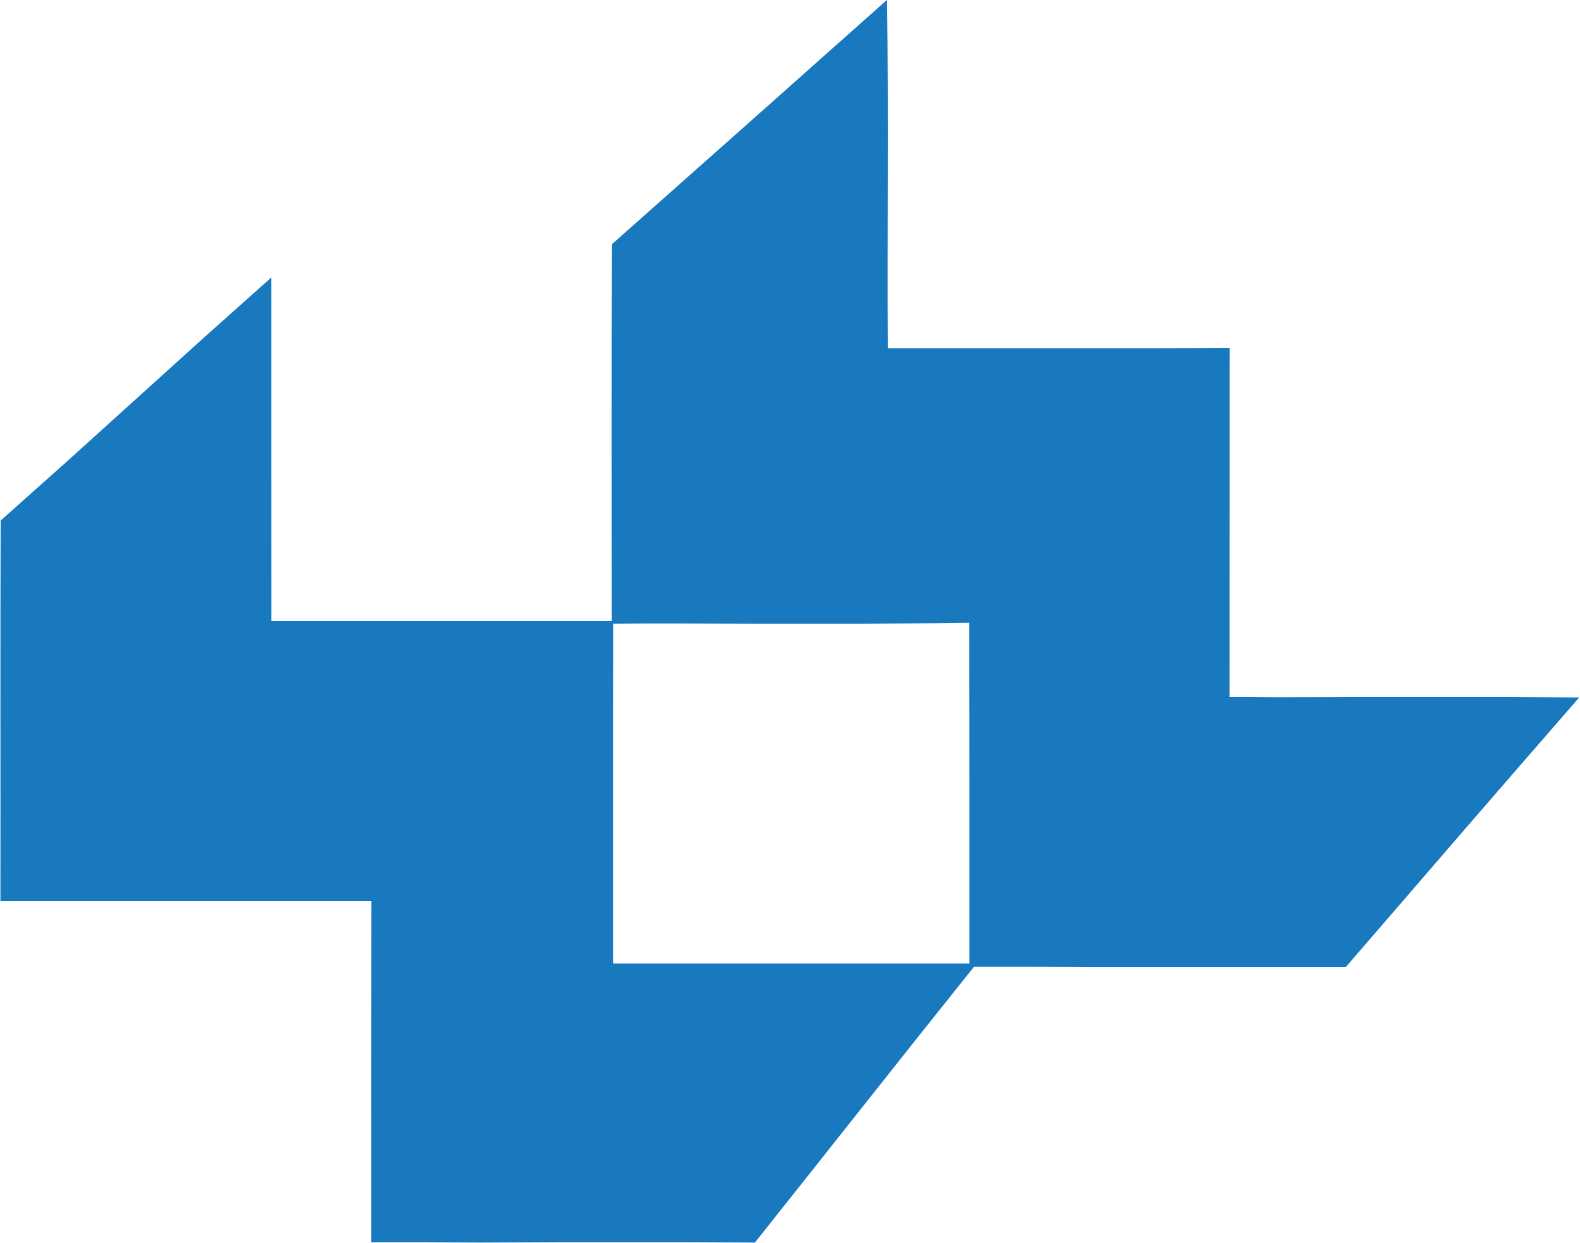 Lee Enterprises logo in transparent PNG and vectorized SVG formats